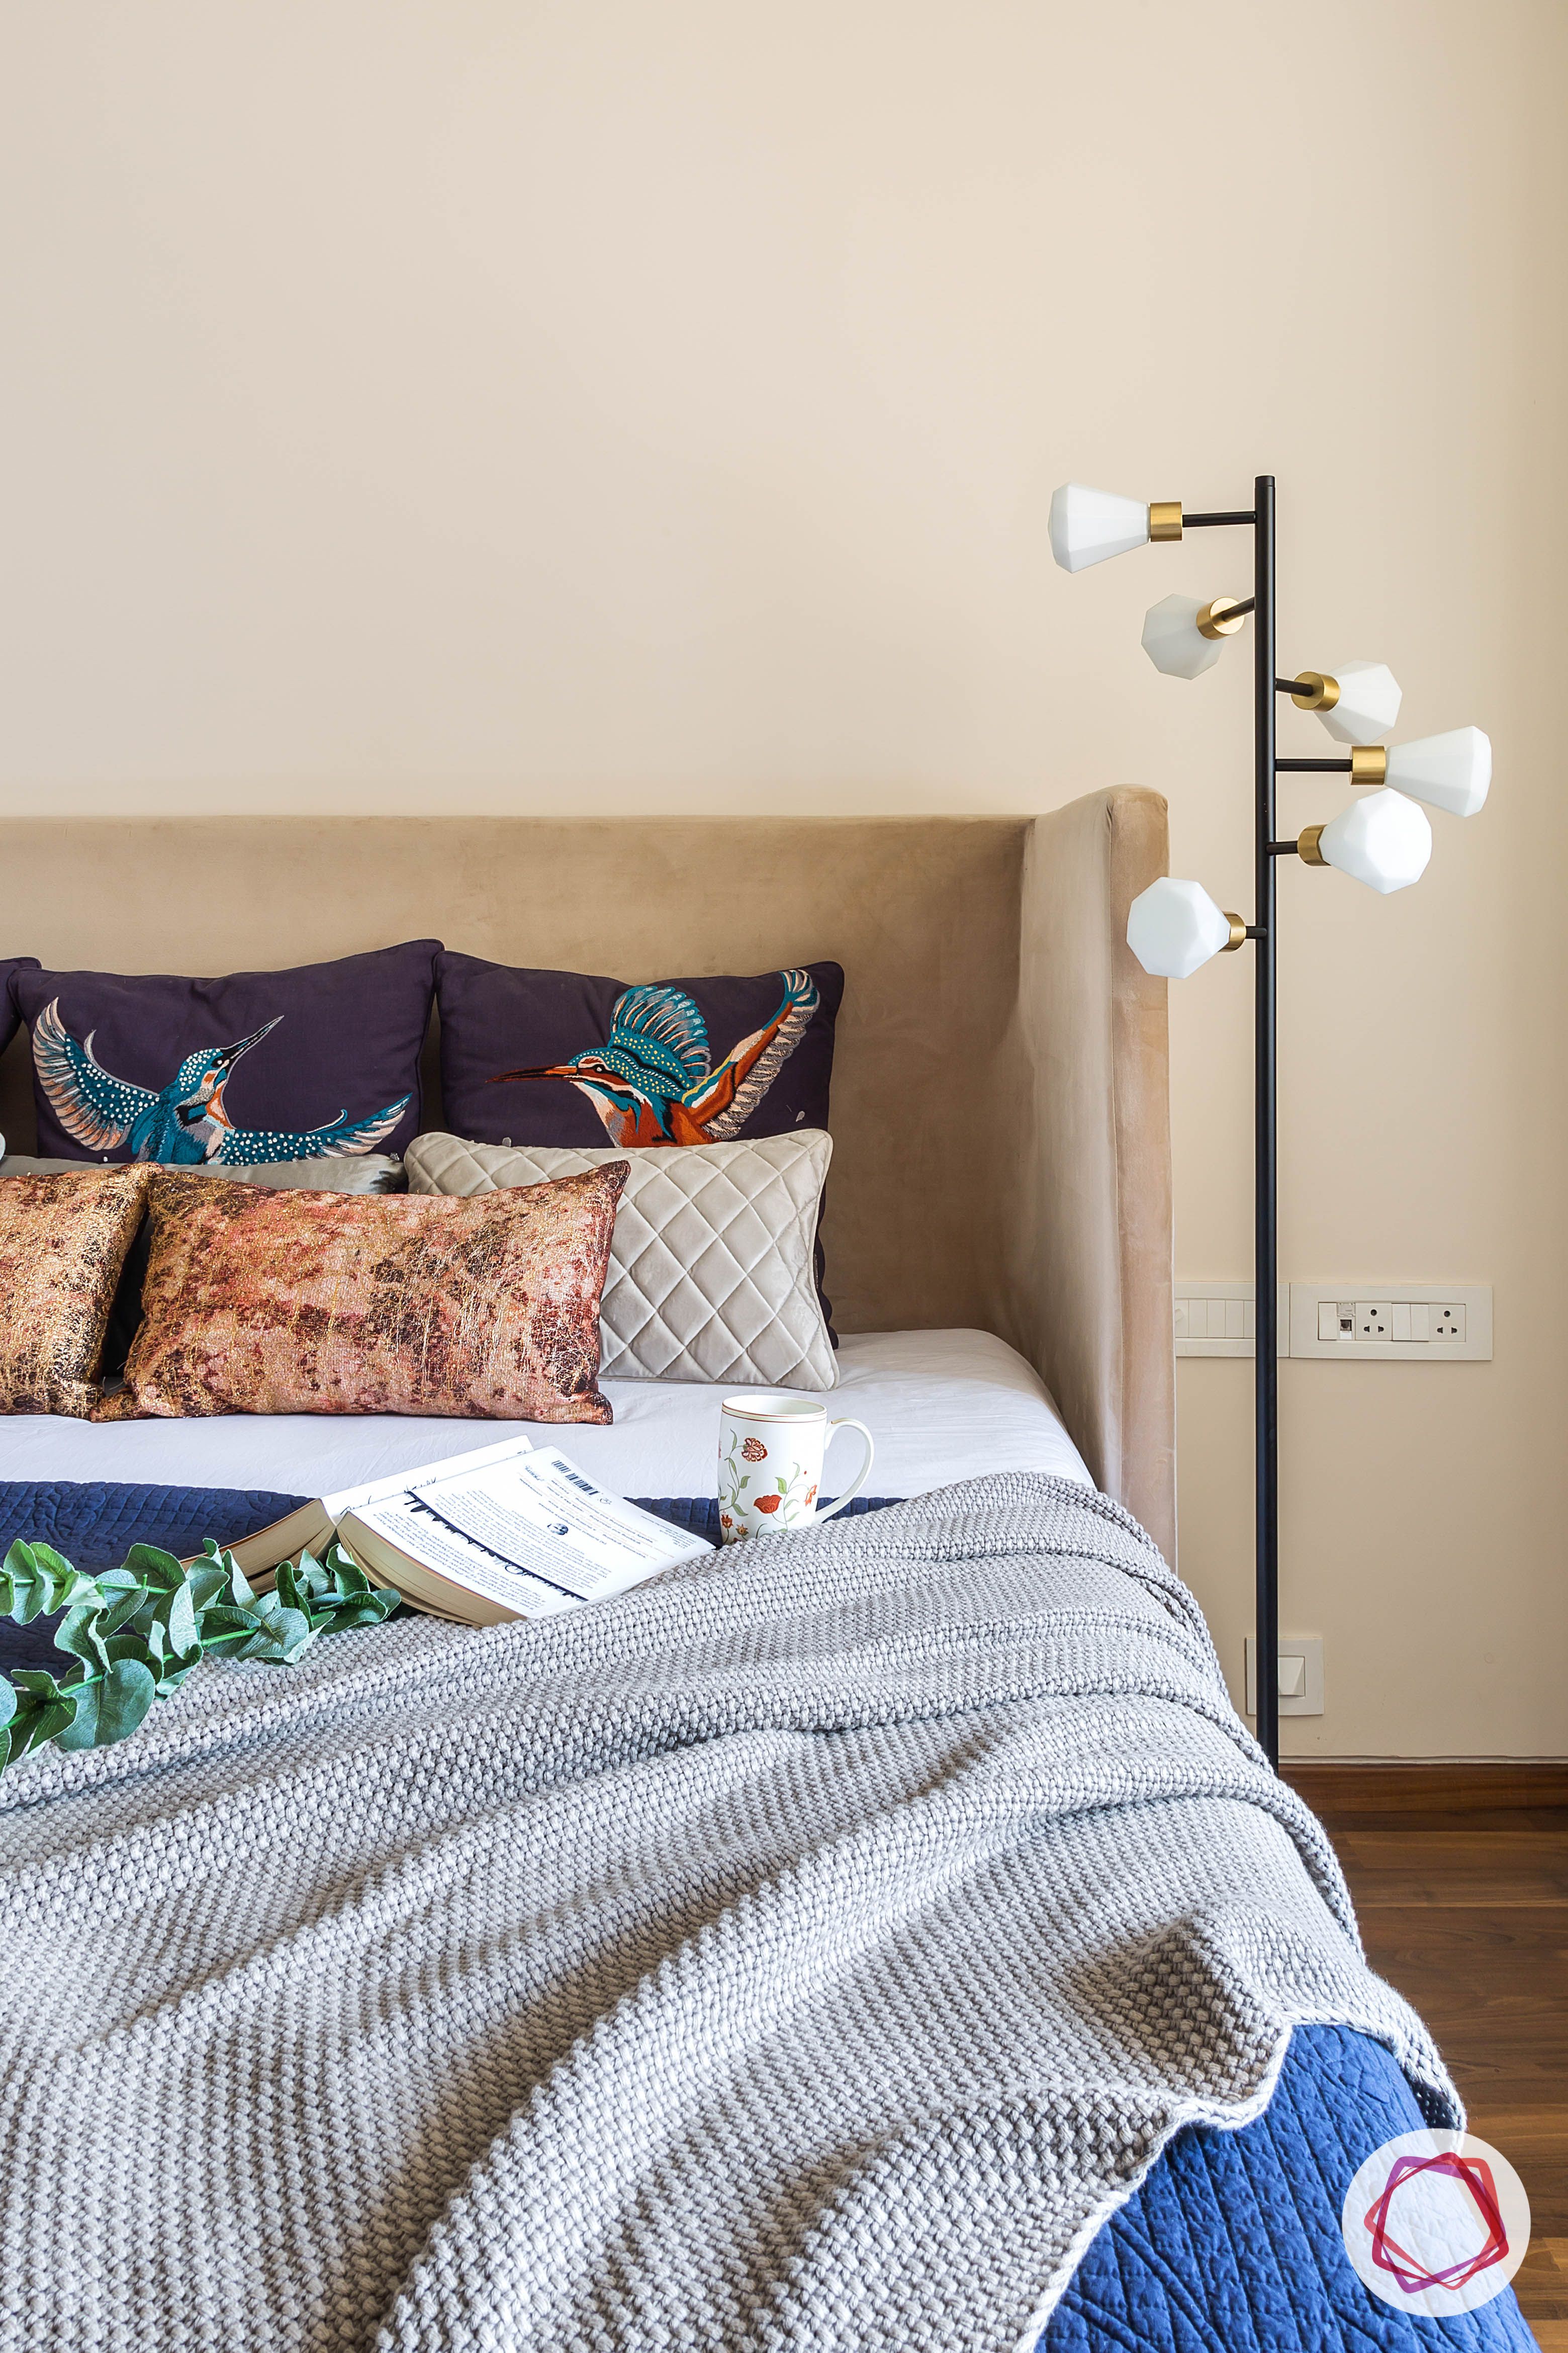 light-fixtures-bedroom-floor-light-bulbs-bed